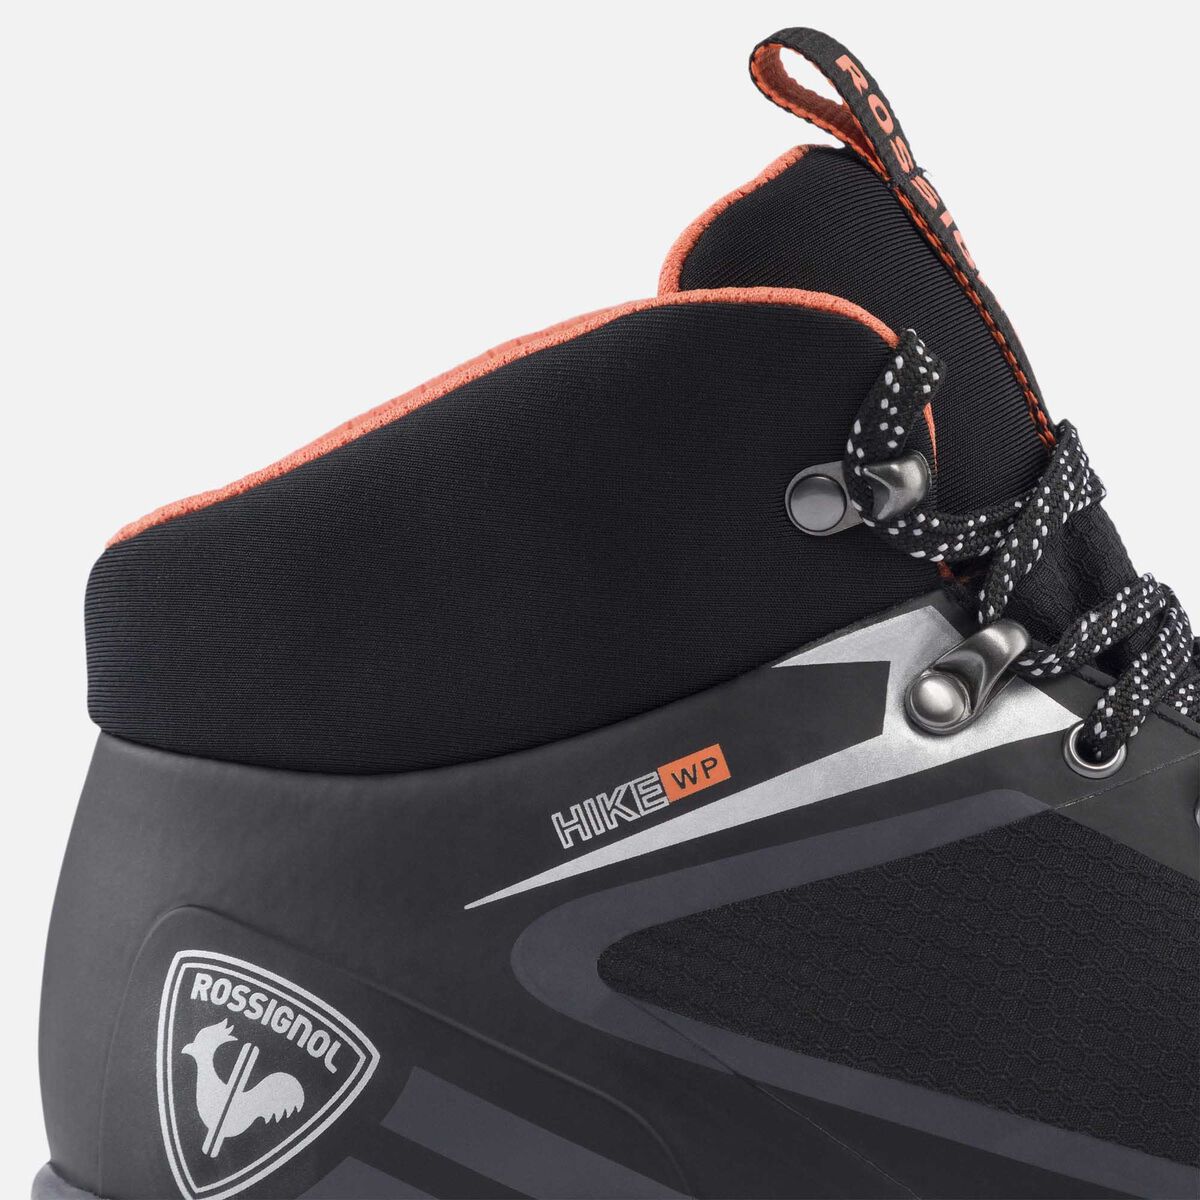 Rossignol Women's black waterproof hiking shoes black